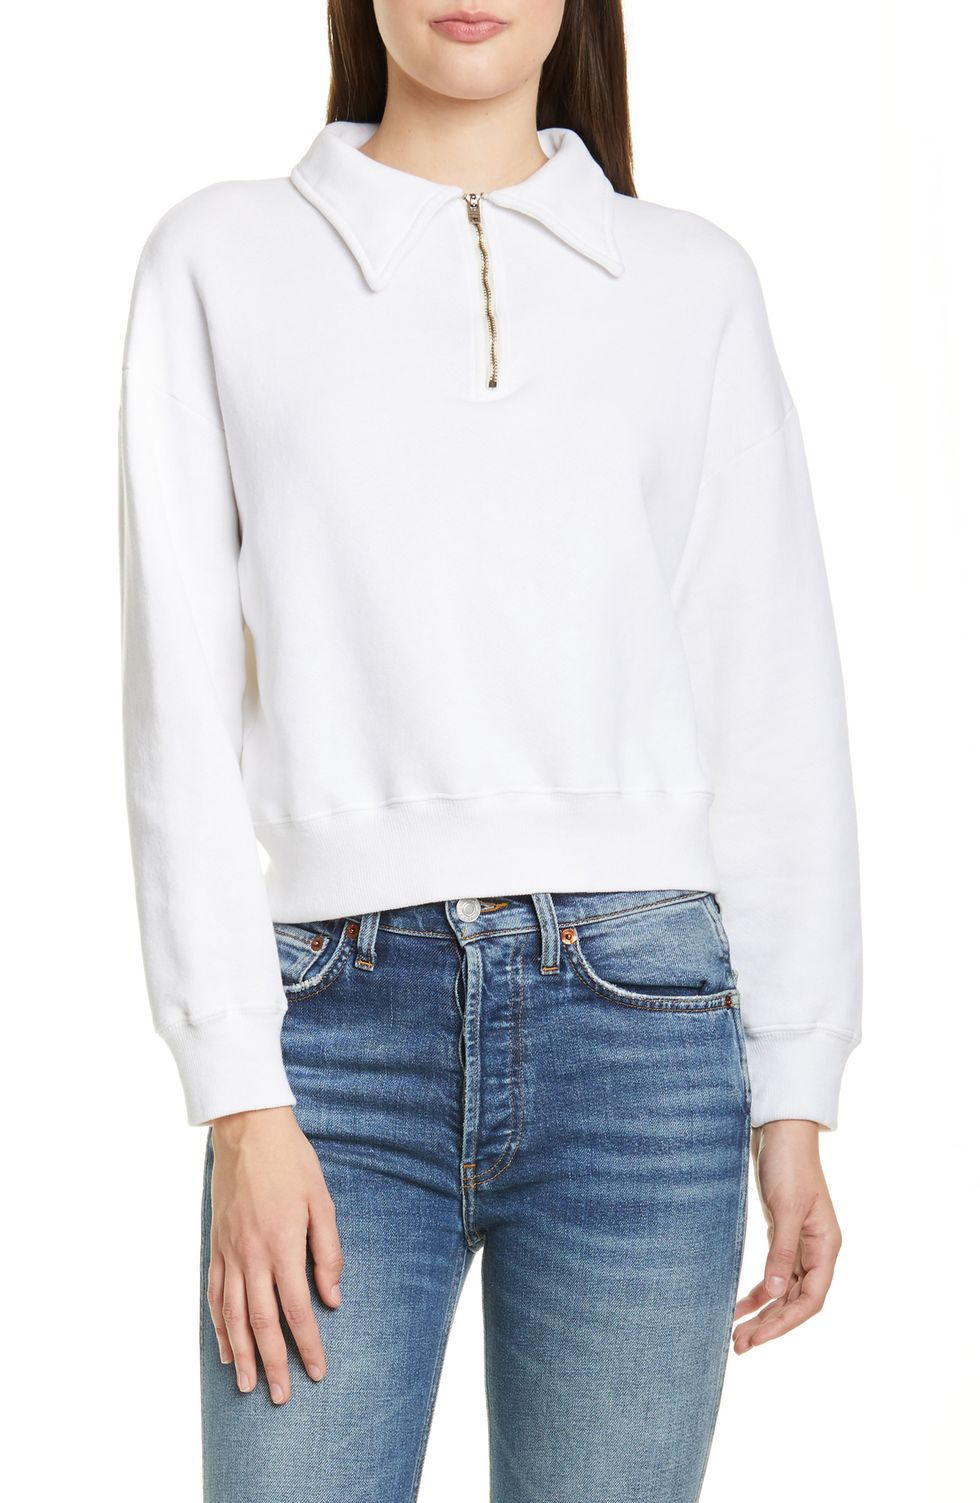 14 Best Half Zip Sweaters to Wear Spring 2022 - Half Zip Pullovers for ...